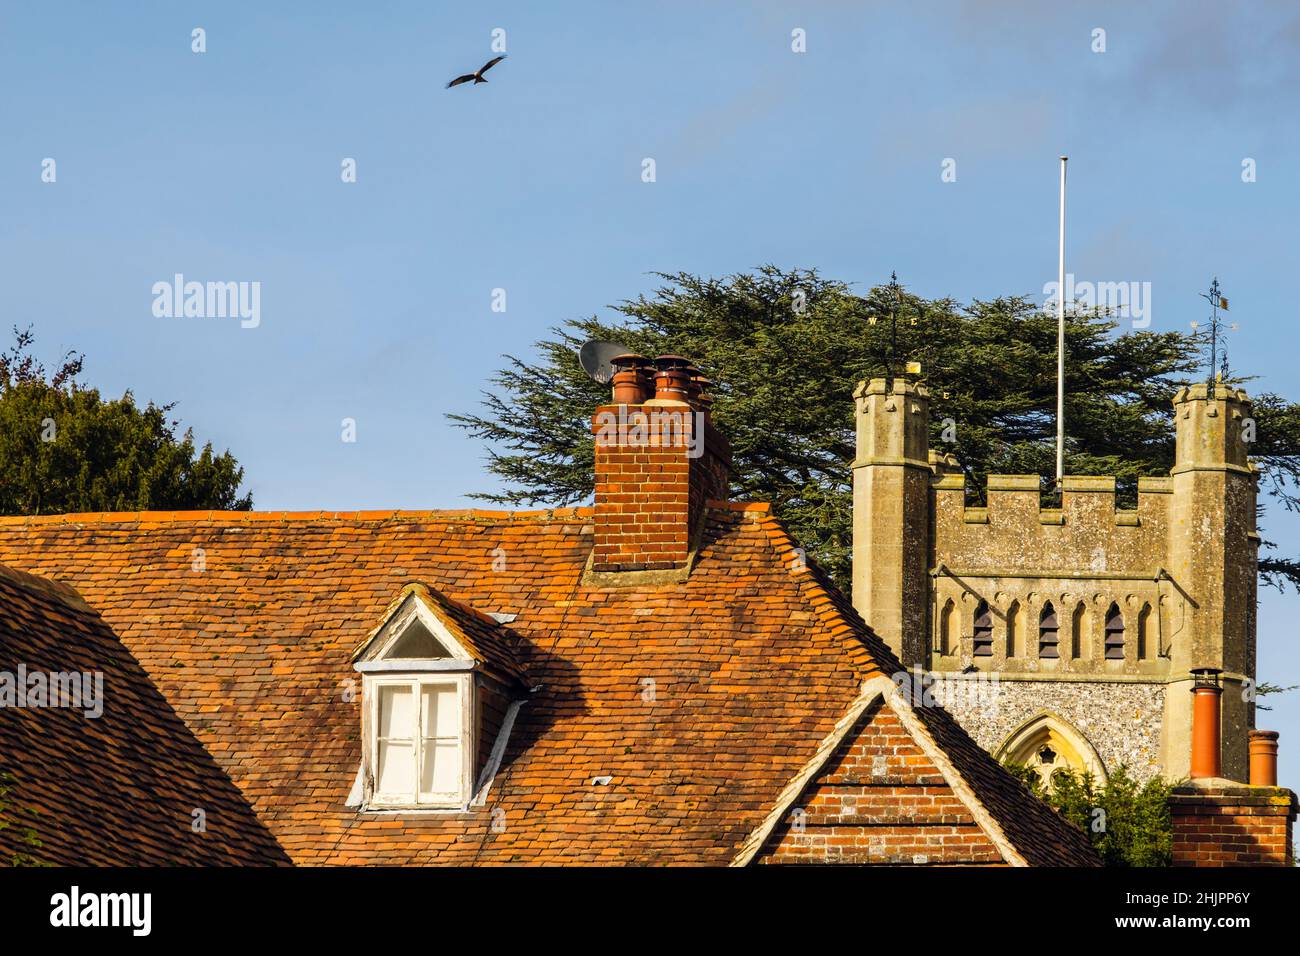 Red Kite fliegt tief über die Dächer und die Kirche St. Mary the Virgin aus dem 14th. Jahrhundert im historischen Dorf Chilterns. Hambleden, Buckinghamshire, England, Großbritannien Stockfoto